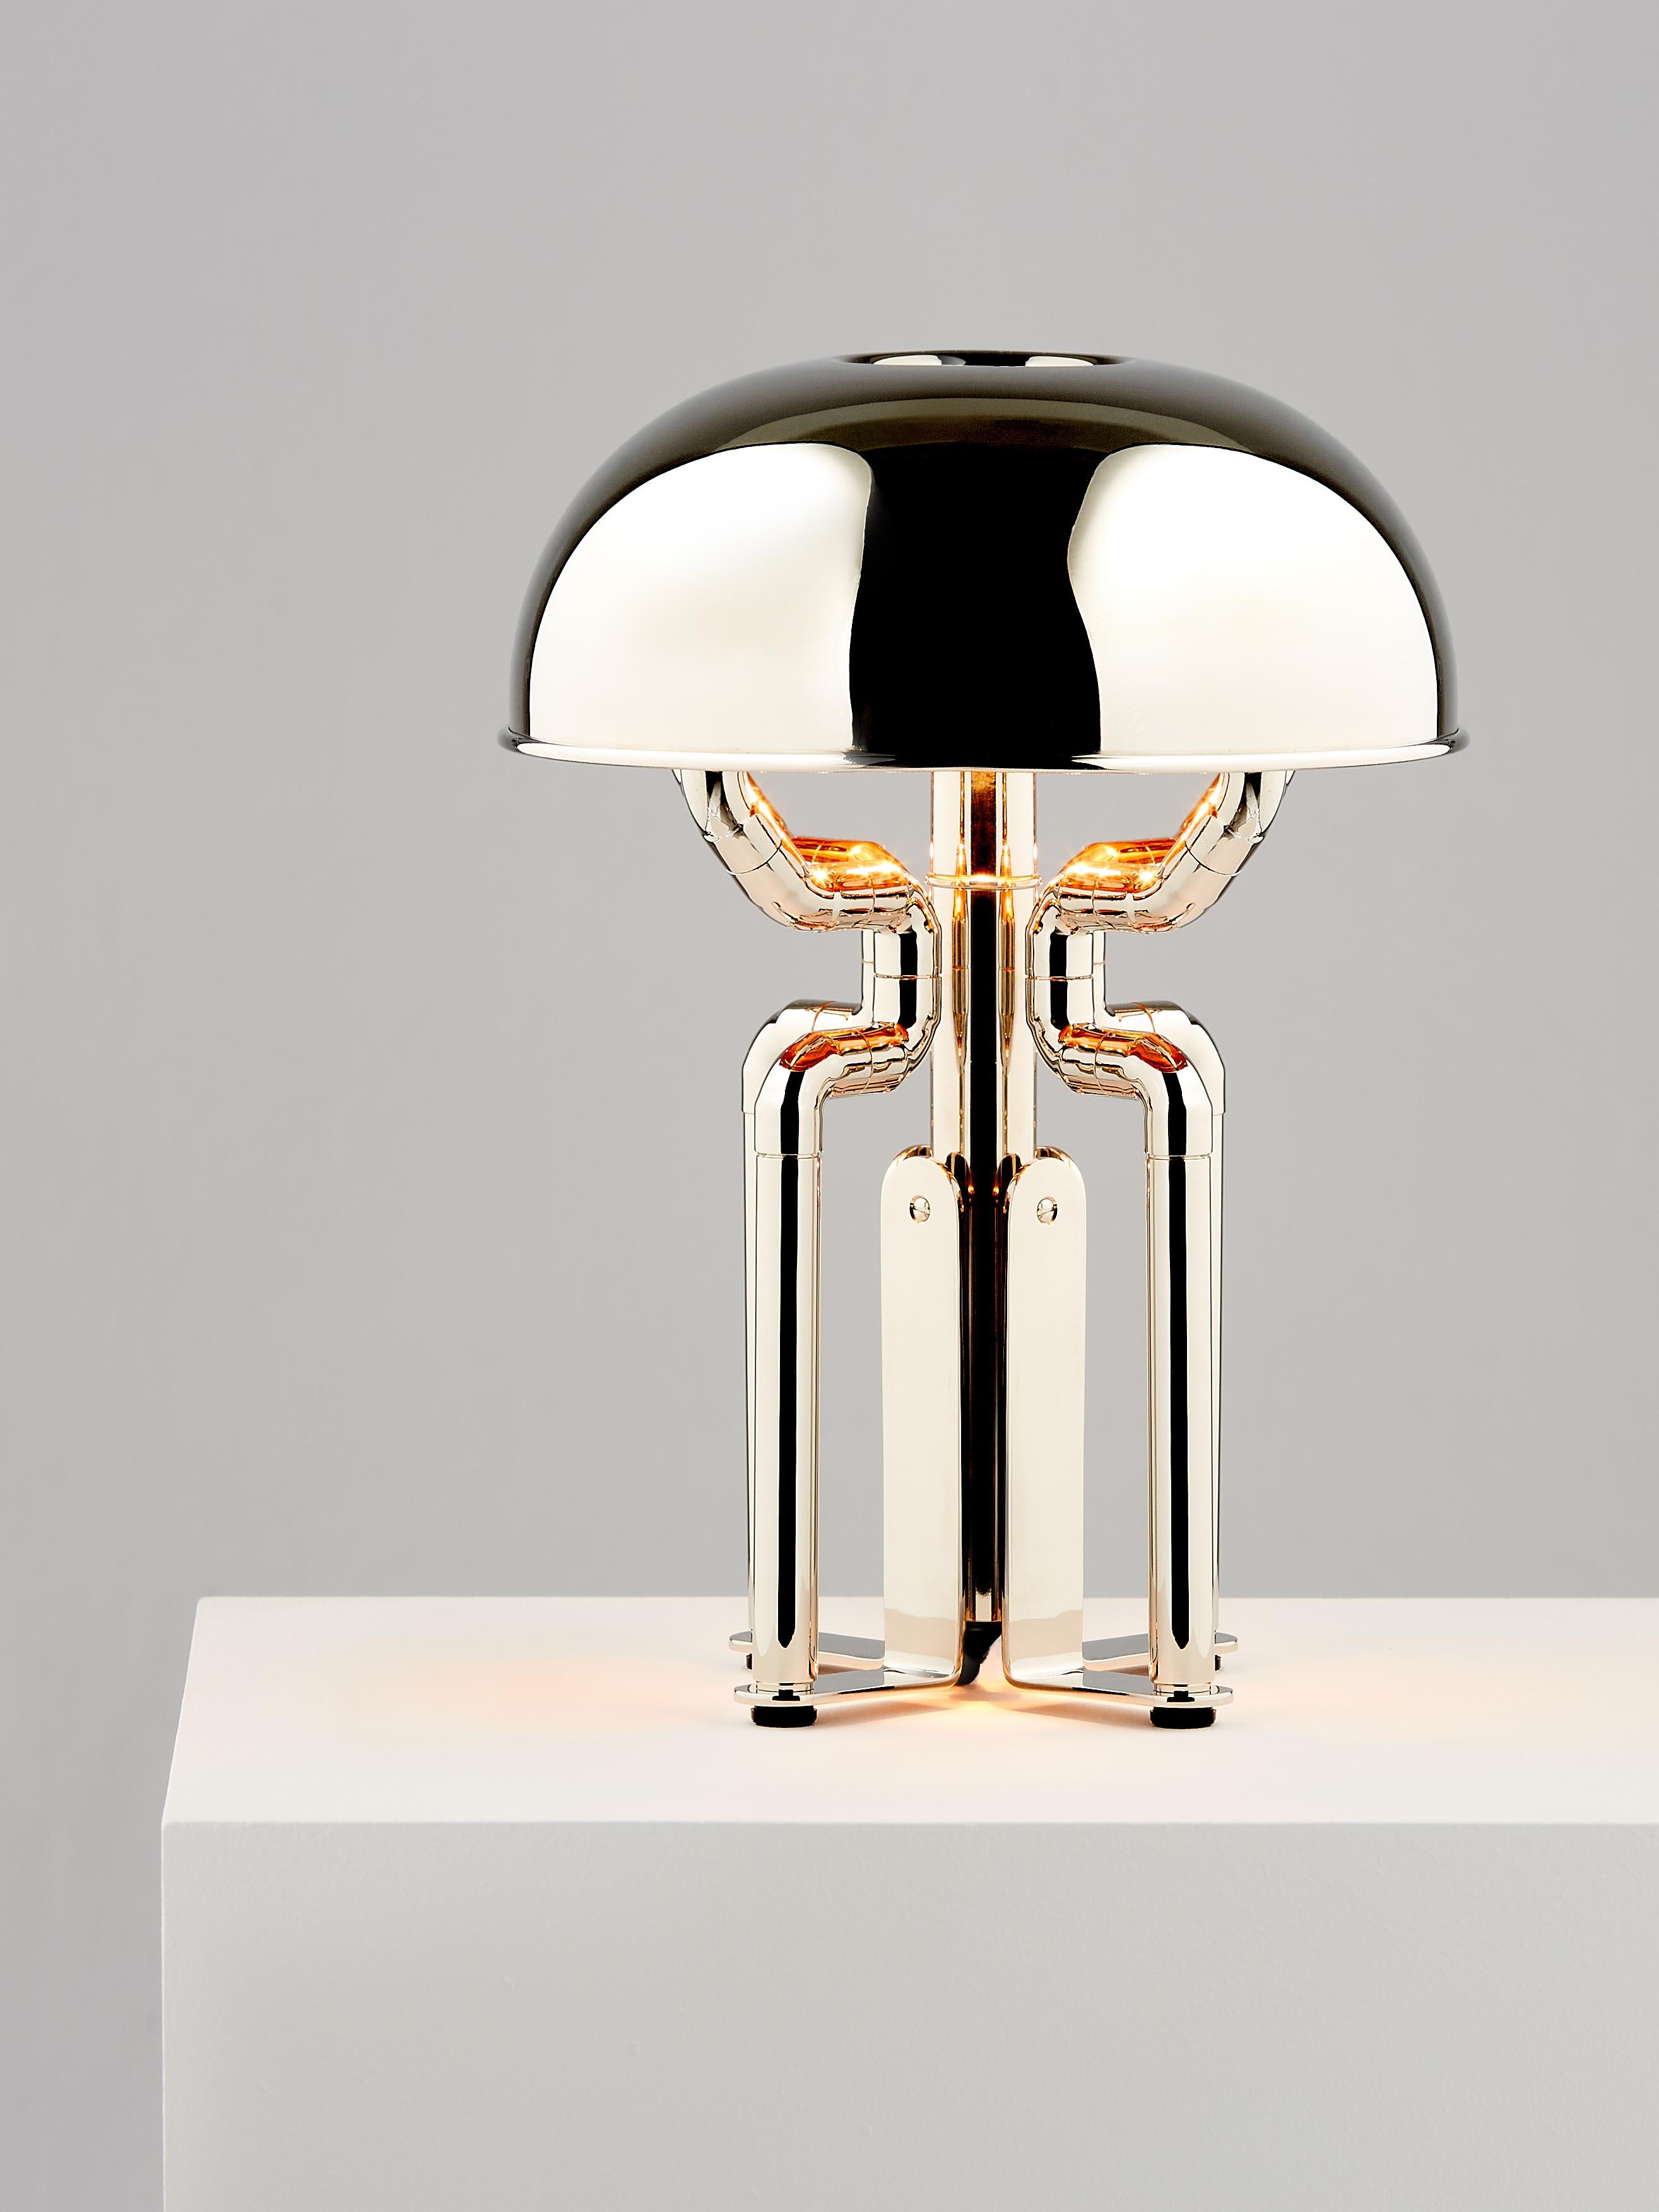 And Objects, studio de design de produits fondé par Martin Brudnizki et Nick Jeanes et basé à Londres.

Avec sa finition en nickel poli et son abat-jour intérieur en cuivre, la lampe de bureau Cheriton rayonne d'un éclat d'or rose. Son abat-jour